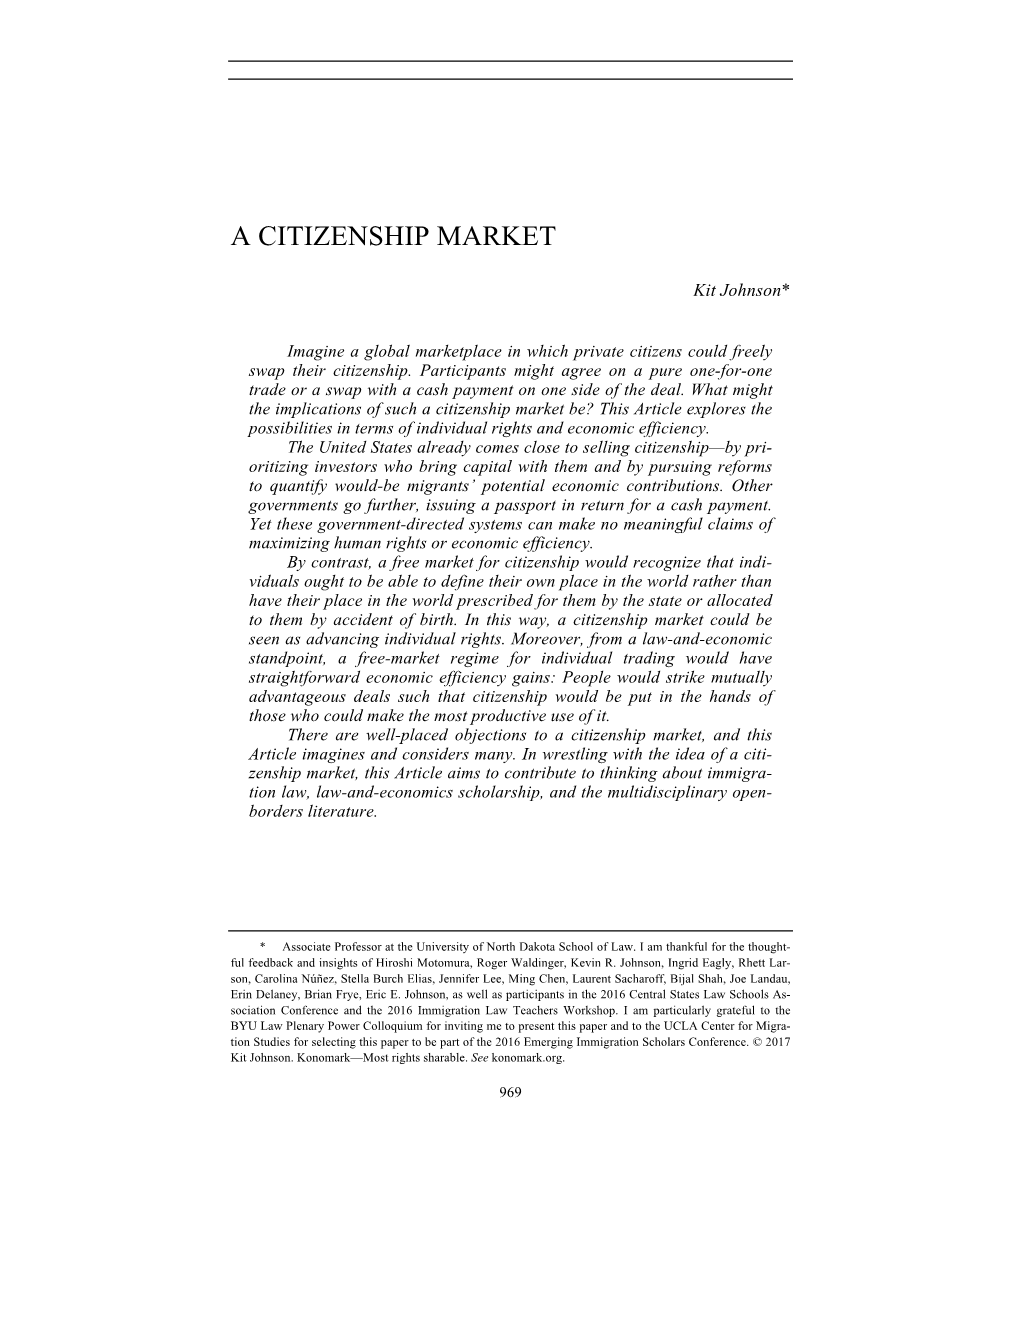 A Citizenship Market